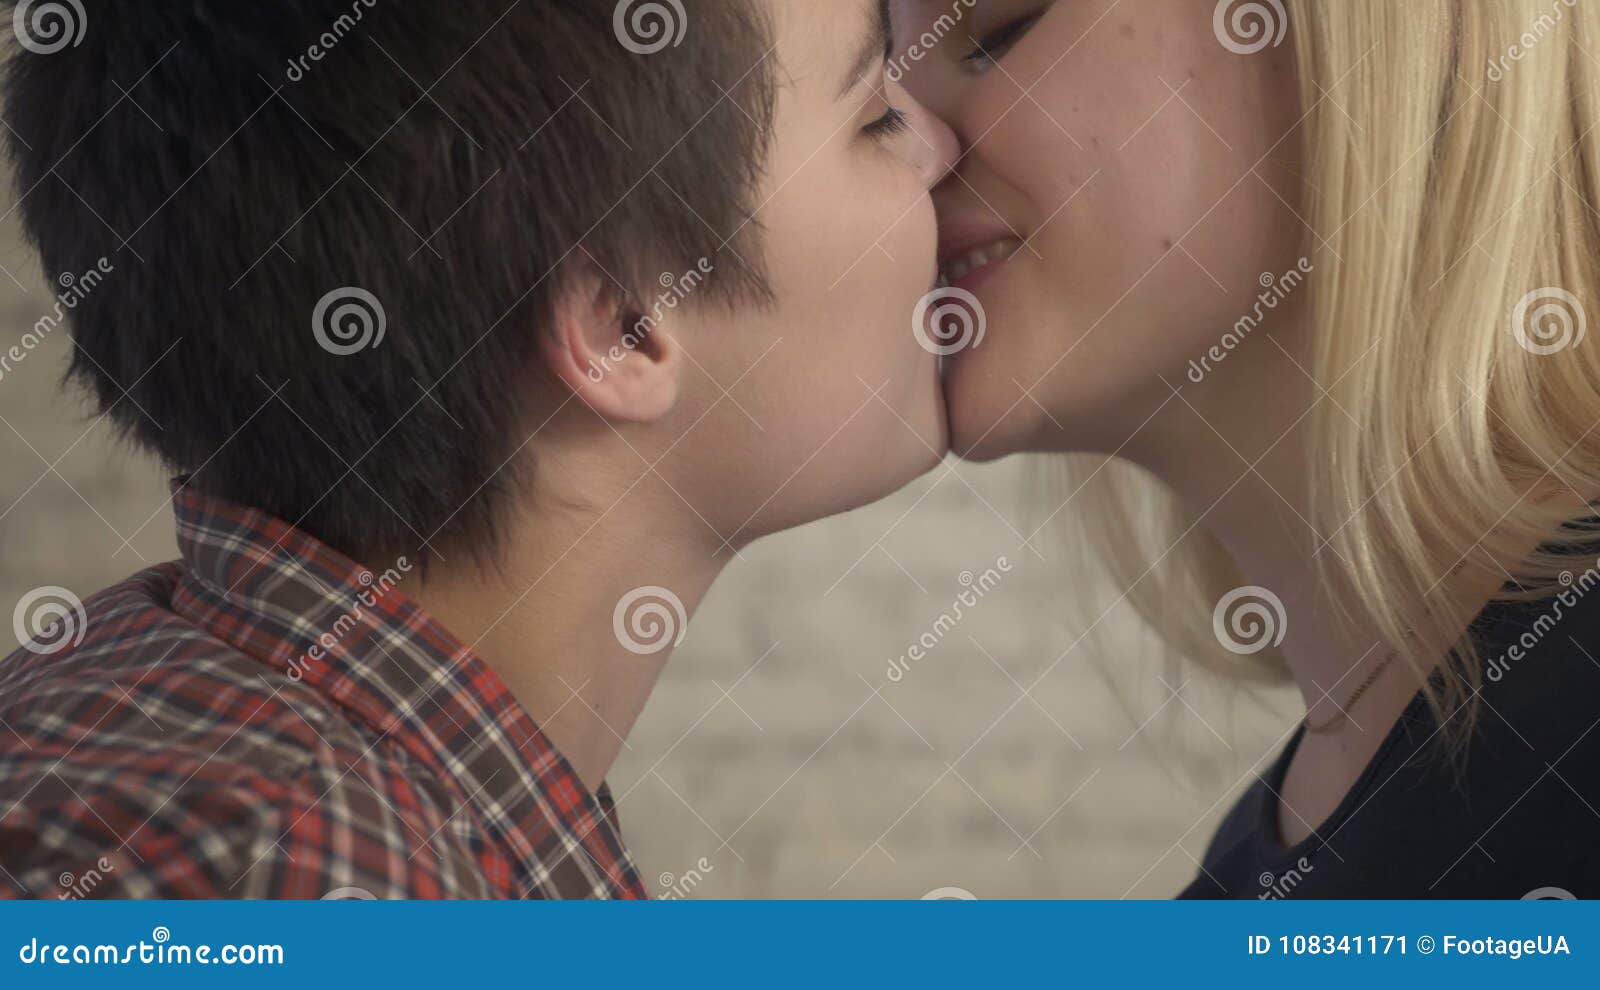 Zwei junge Girls versuchen sich in der Lesbenliebe